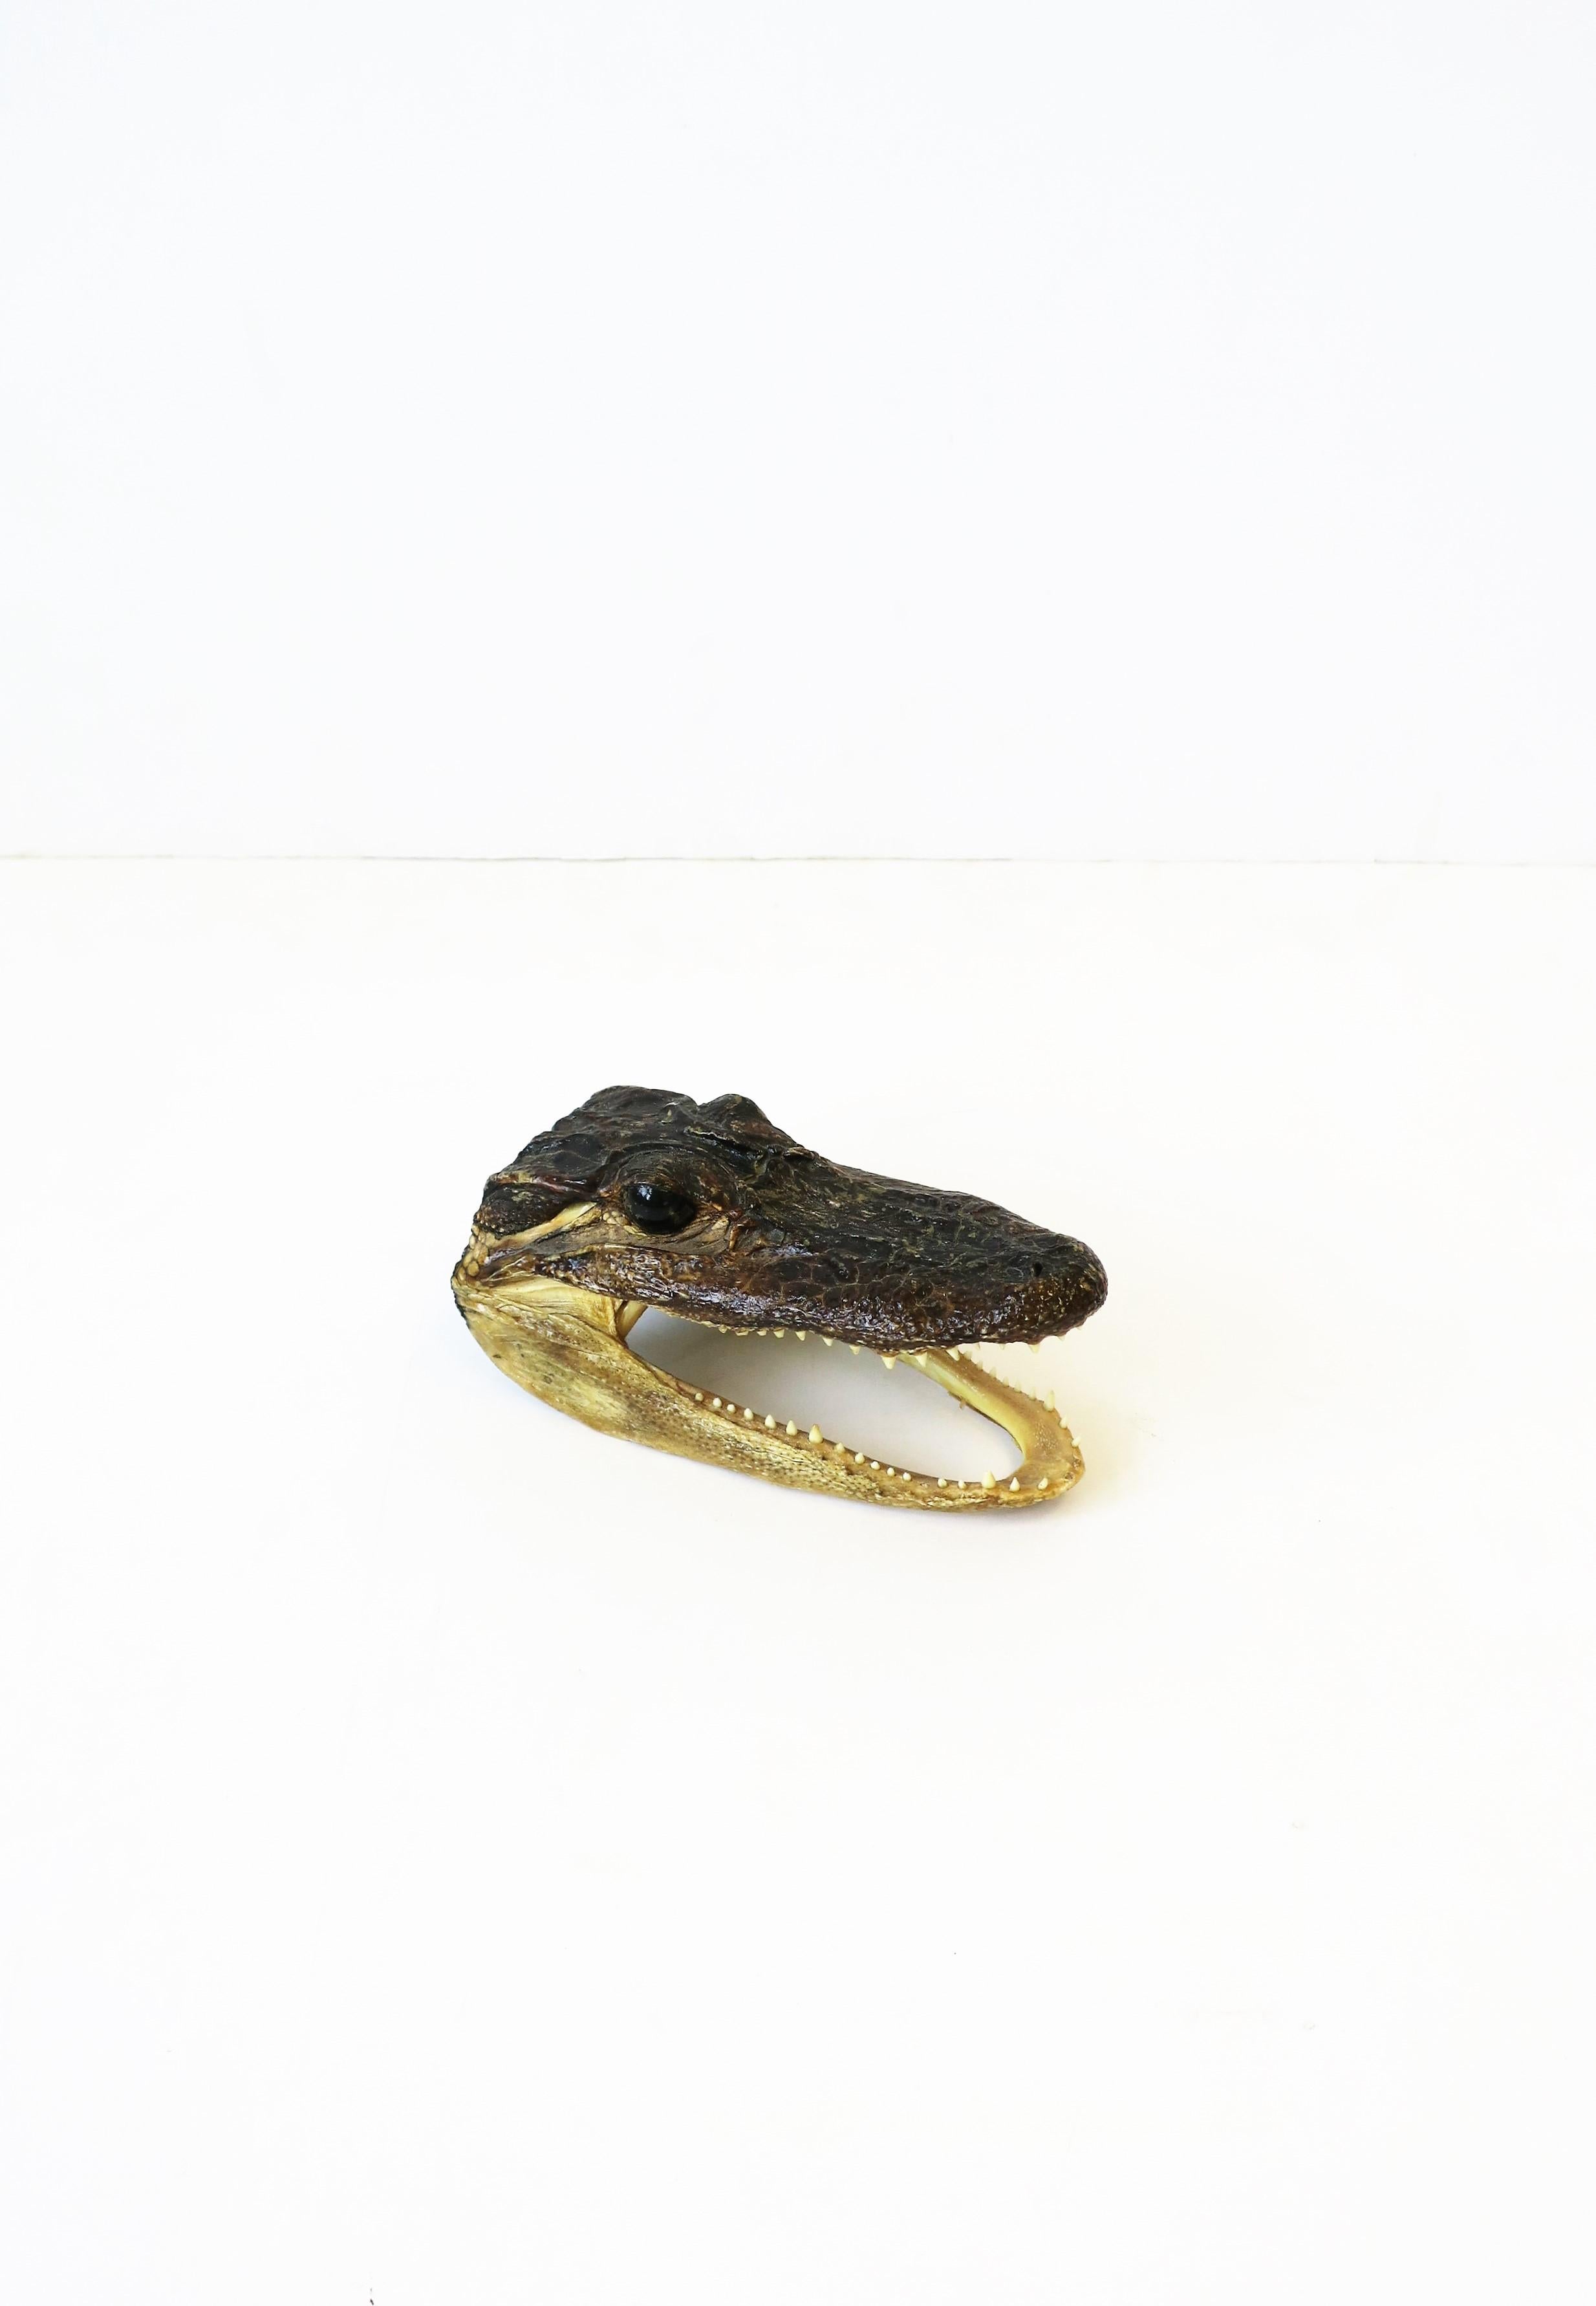 alligator taxidermy for sale